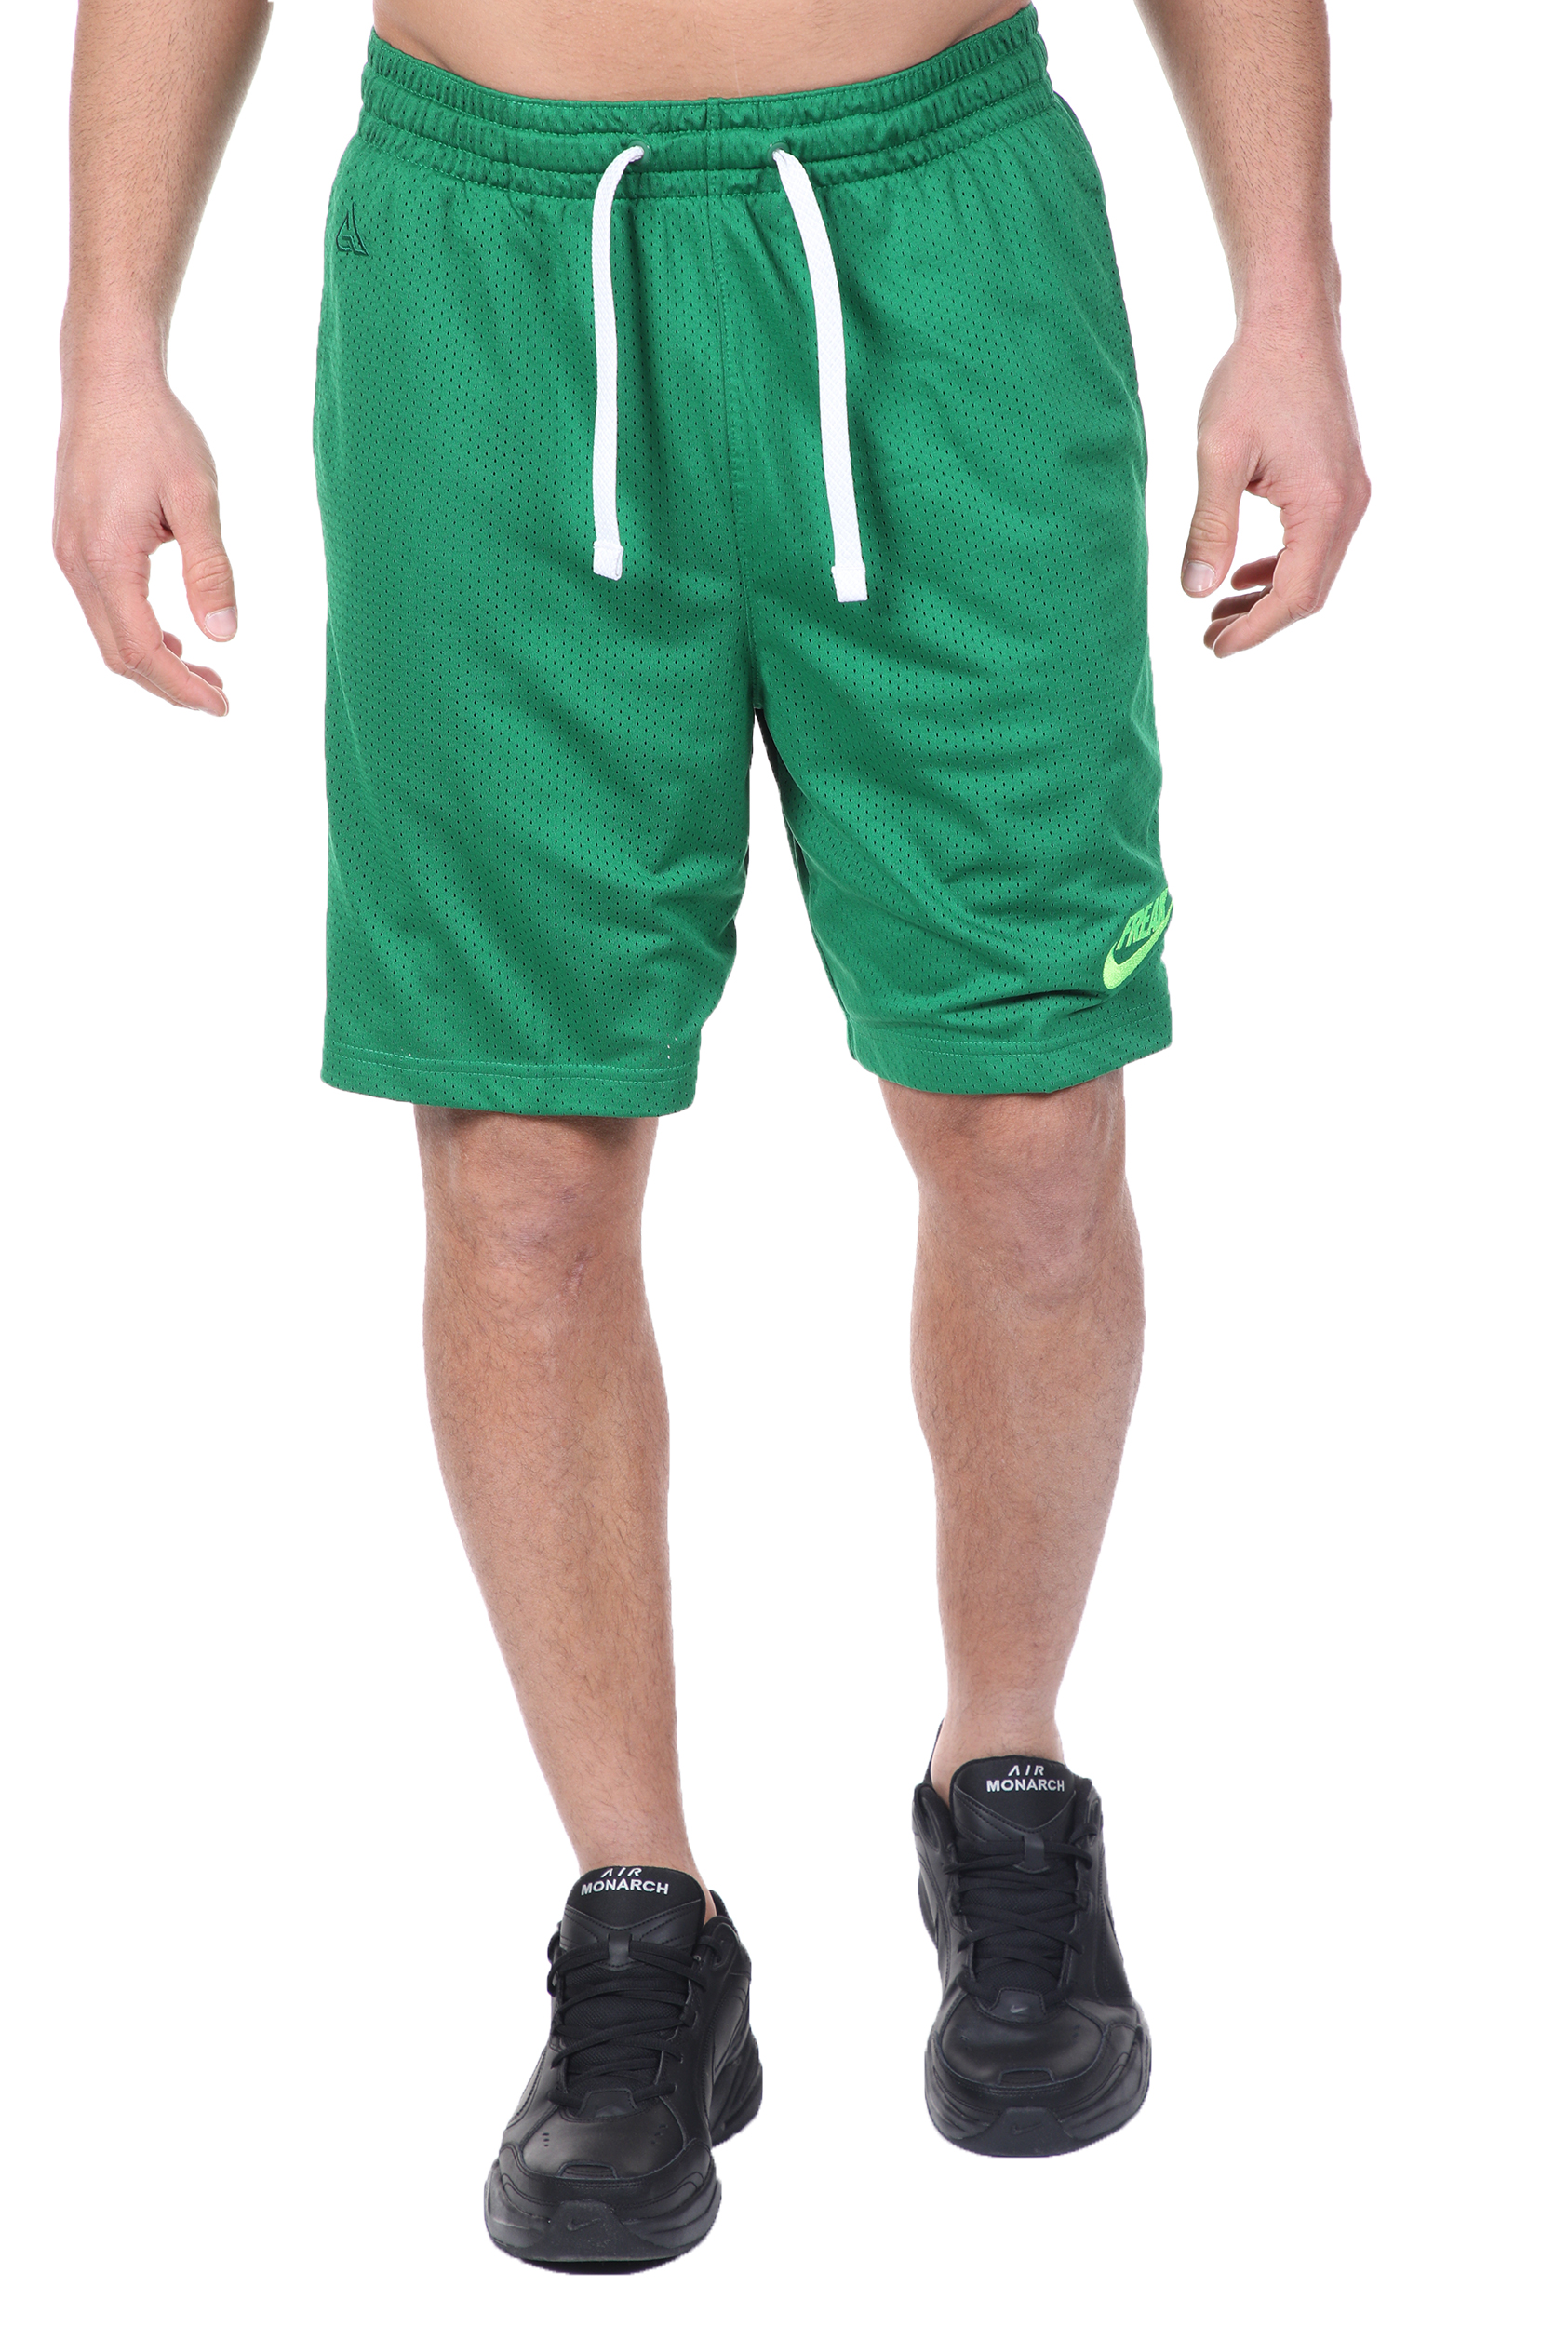 NIKE Ανδρική βερμούδα basketball NIKE FREAK GIANNIS πράσινη